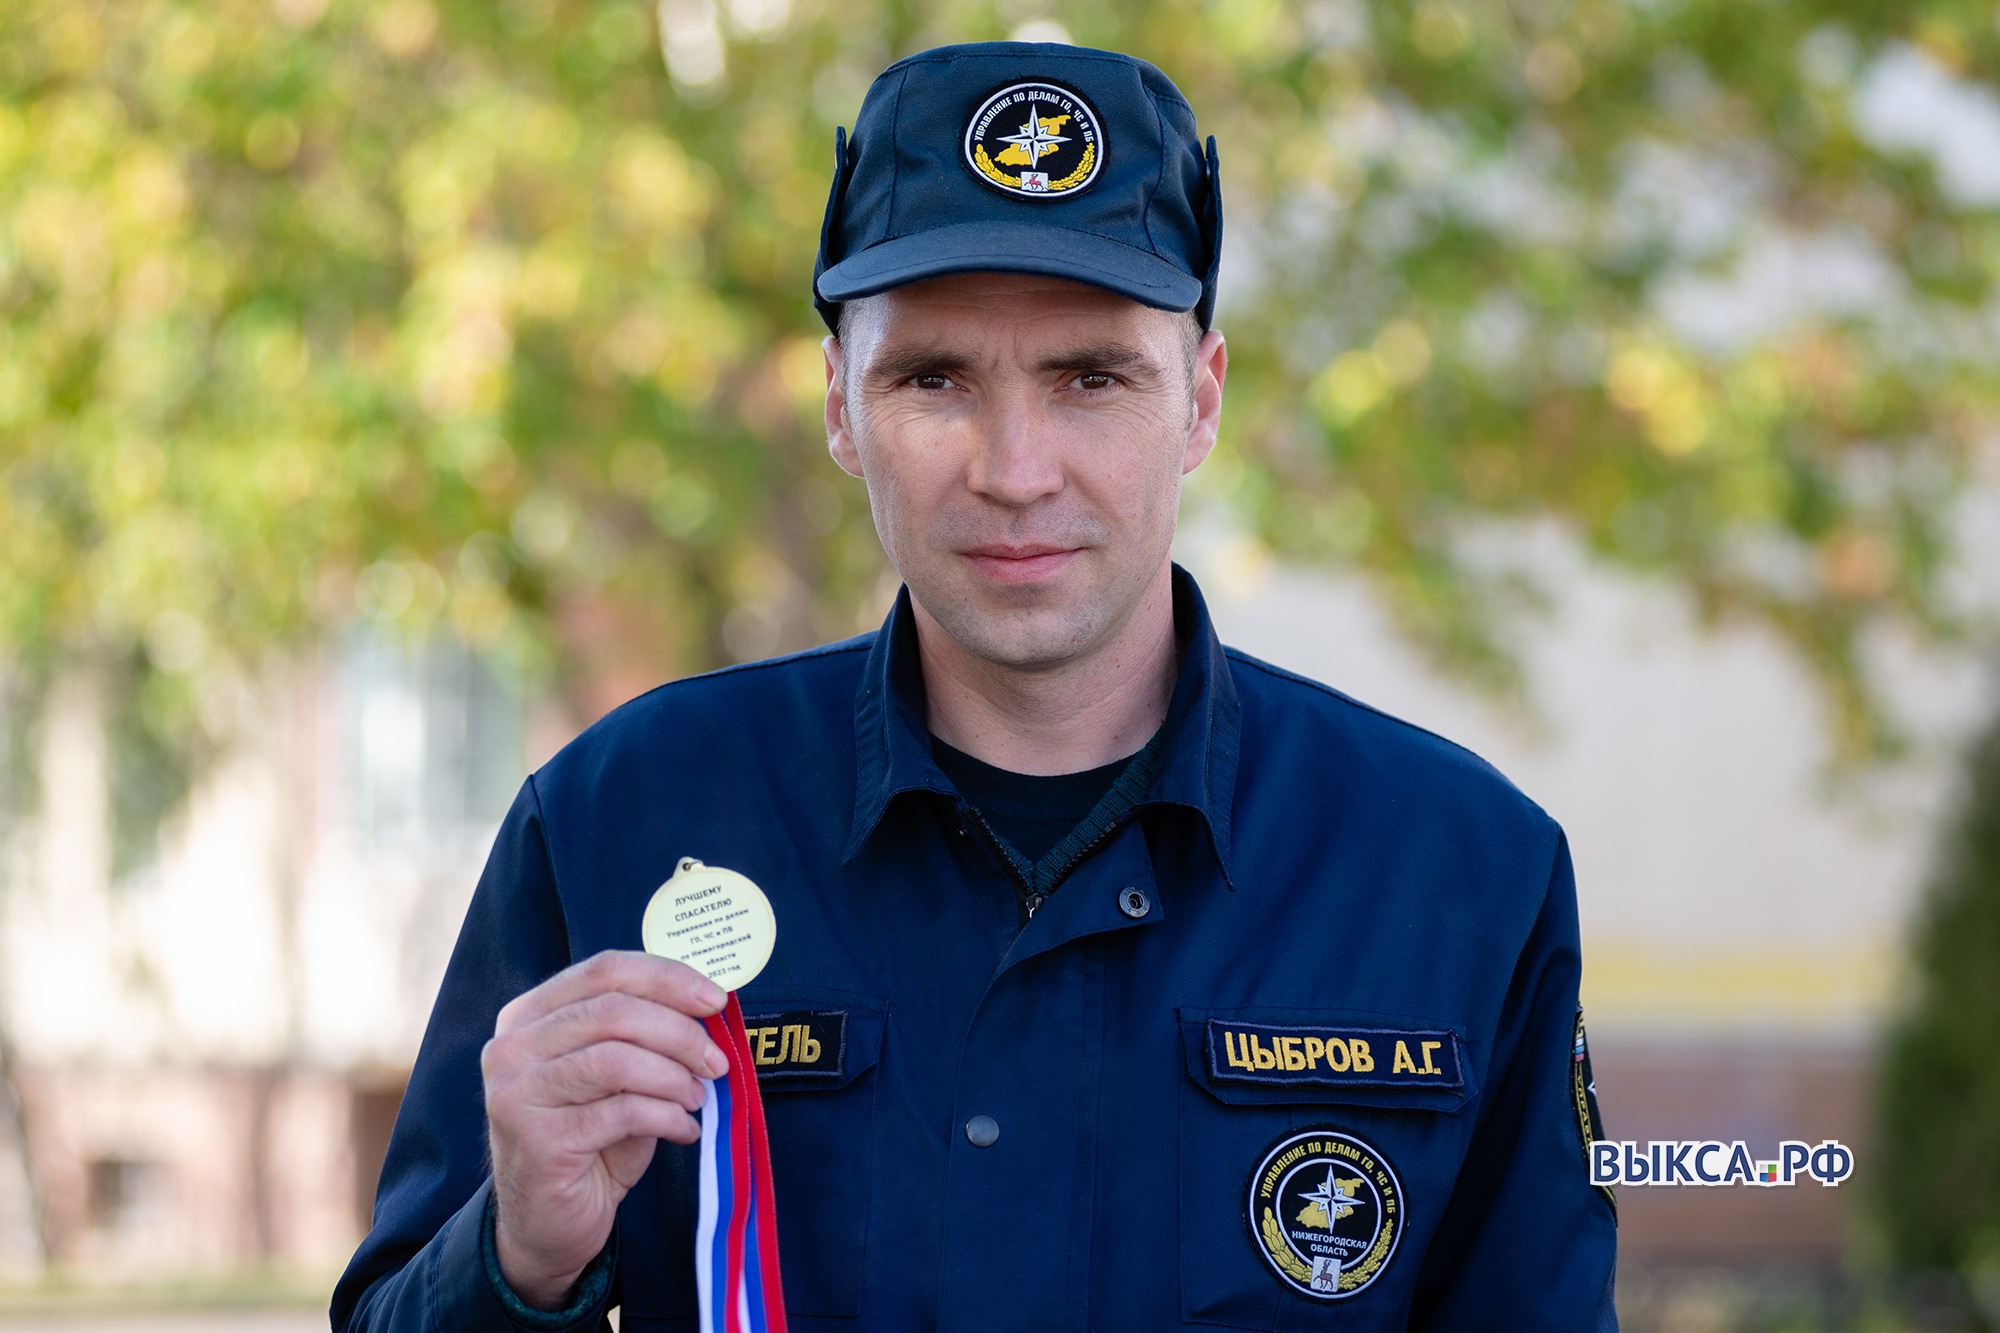 Спасатель Алексей Цыбров завоевал серебро на областных соревнованиях